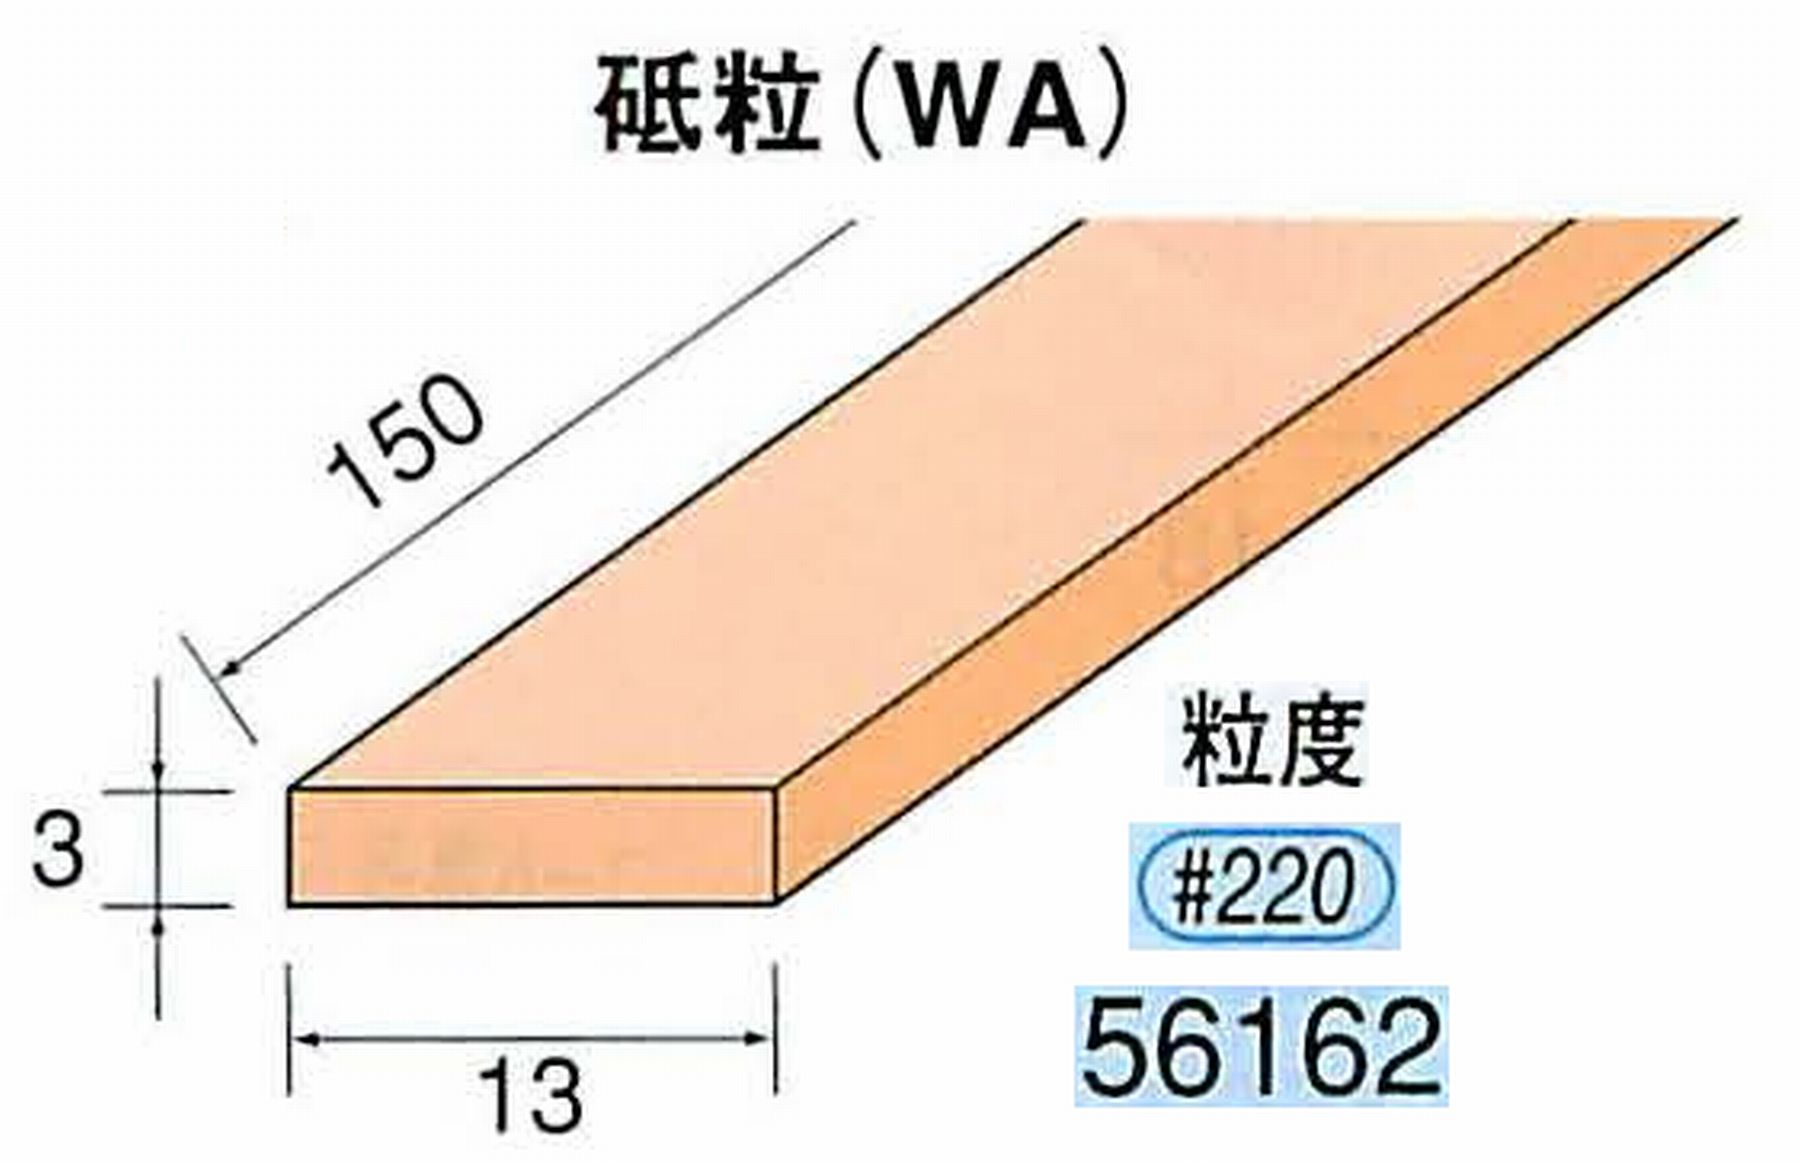 ナカニシ/NAKANISHI スティック砥石 スタンダードシリーズ 砥粒(WA) 56162